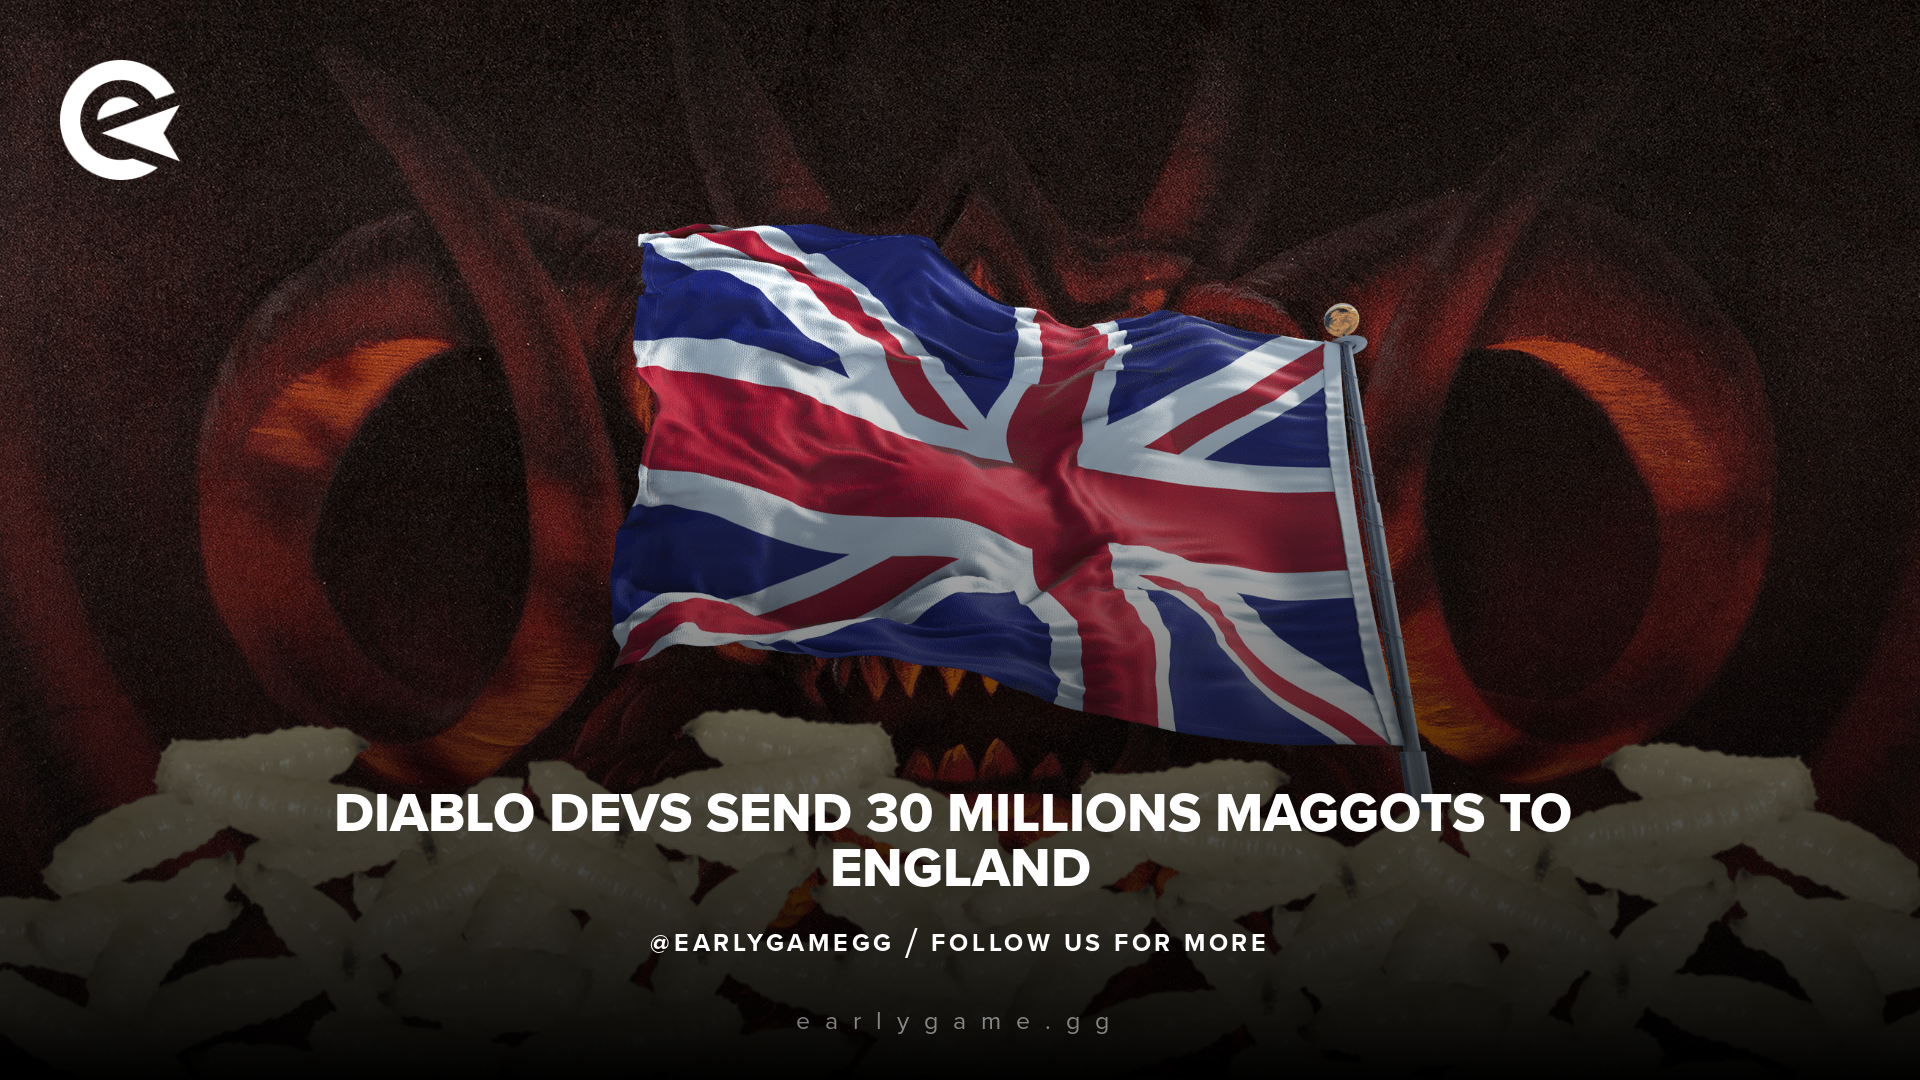 Разработчики Diablo отправили в Англию 30 миллионов личинок